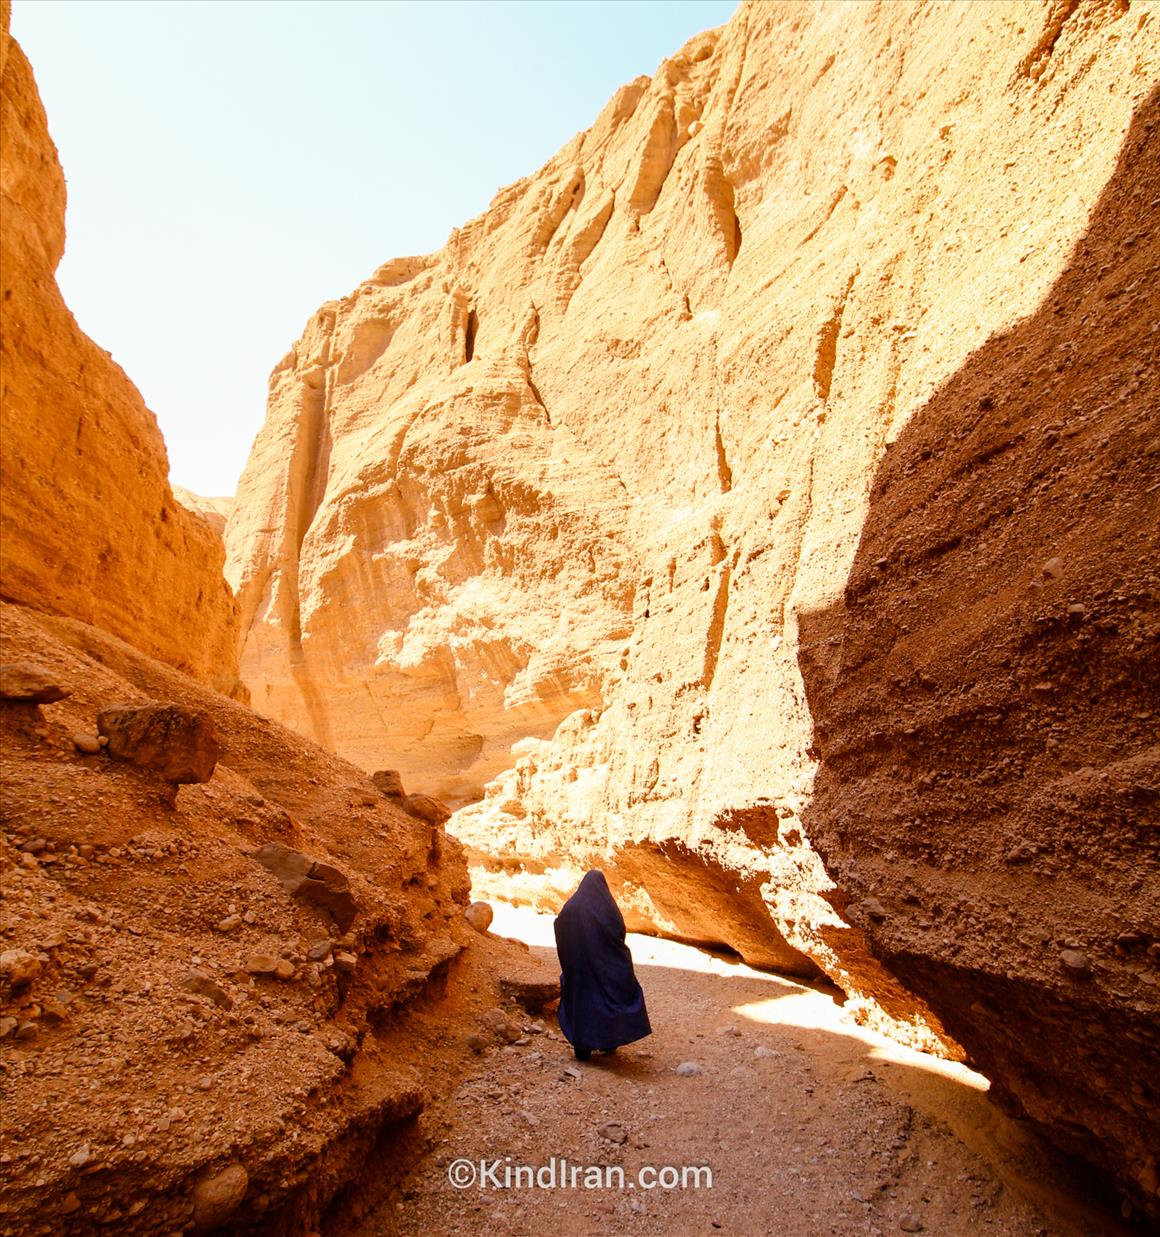 kal-e Jeni, an Amazing Sandy Canyon in Iran